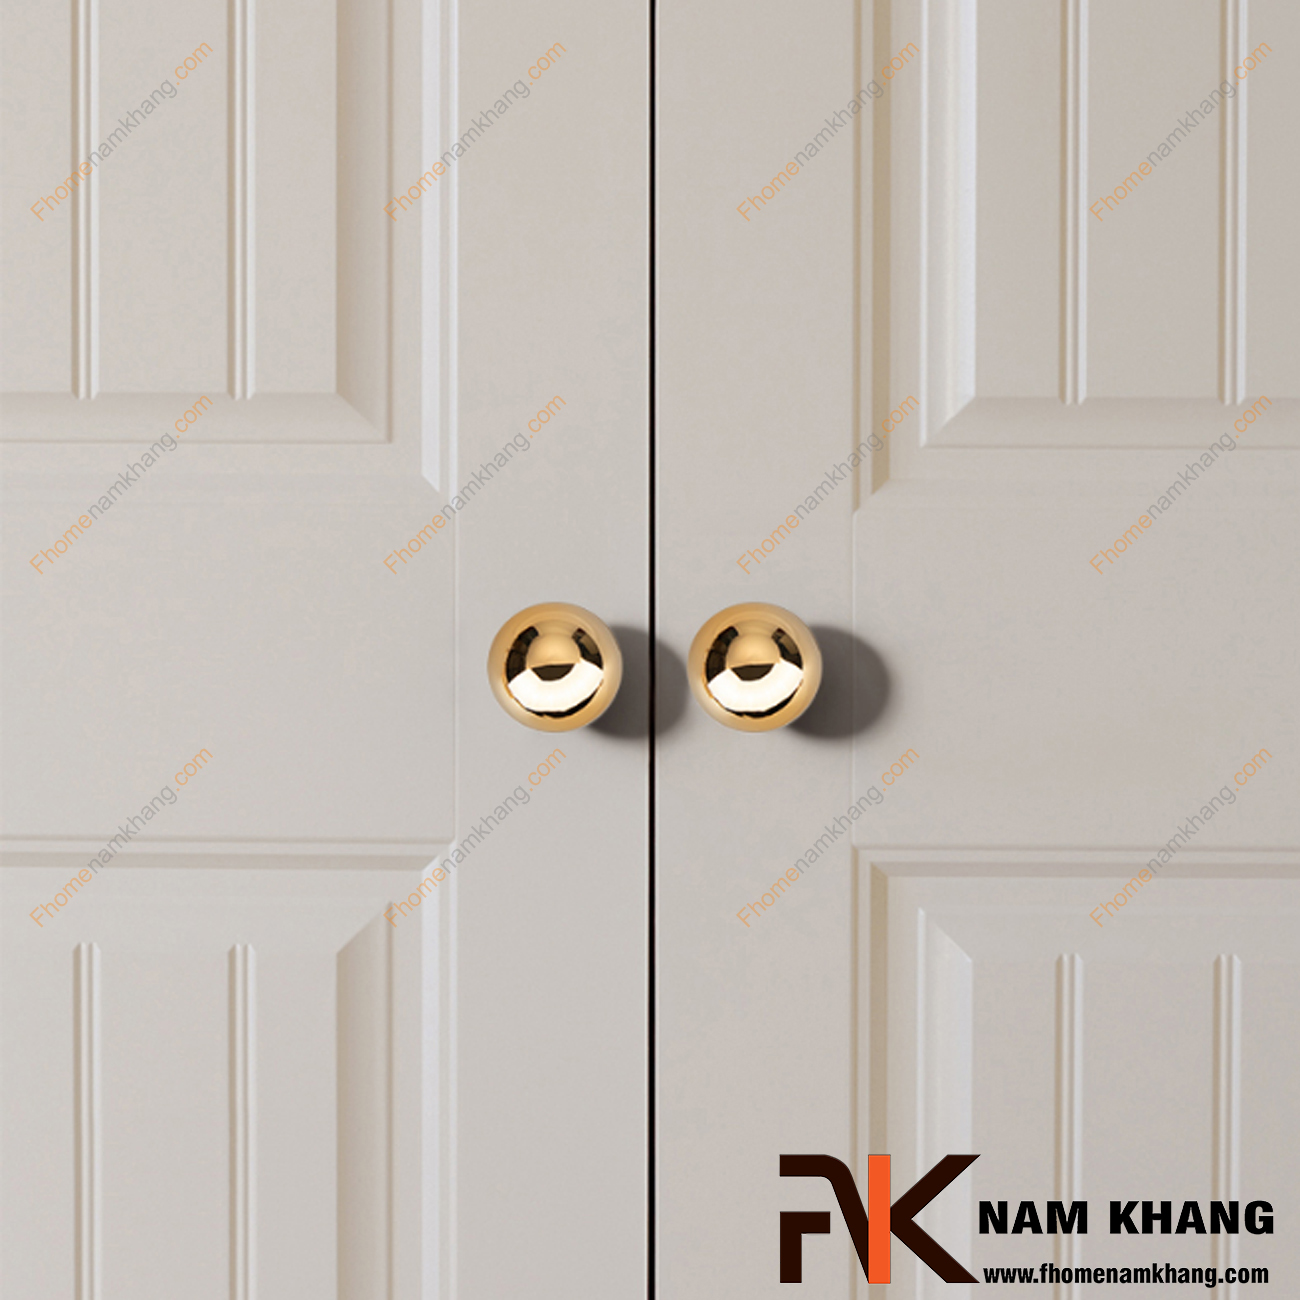 Núm cửa tủ dạng tròn màu vàng bóng NK211-V - sản phẩm phụ kiện tủ nhỏ gọn thiết kế đơn giản bo tròn và sở hữu vẻ ngoài vàng bóng ánh kim cực đẹp.